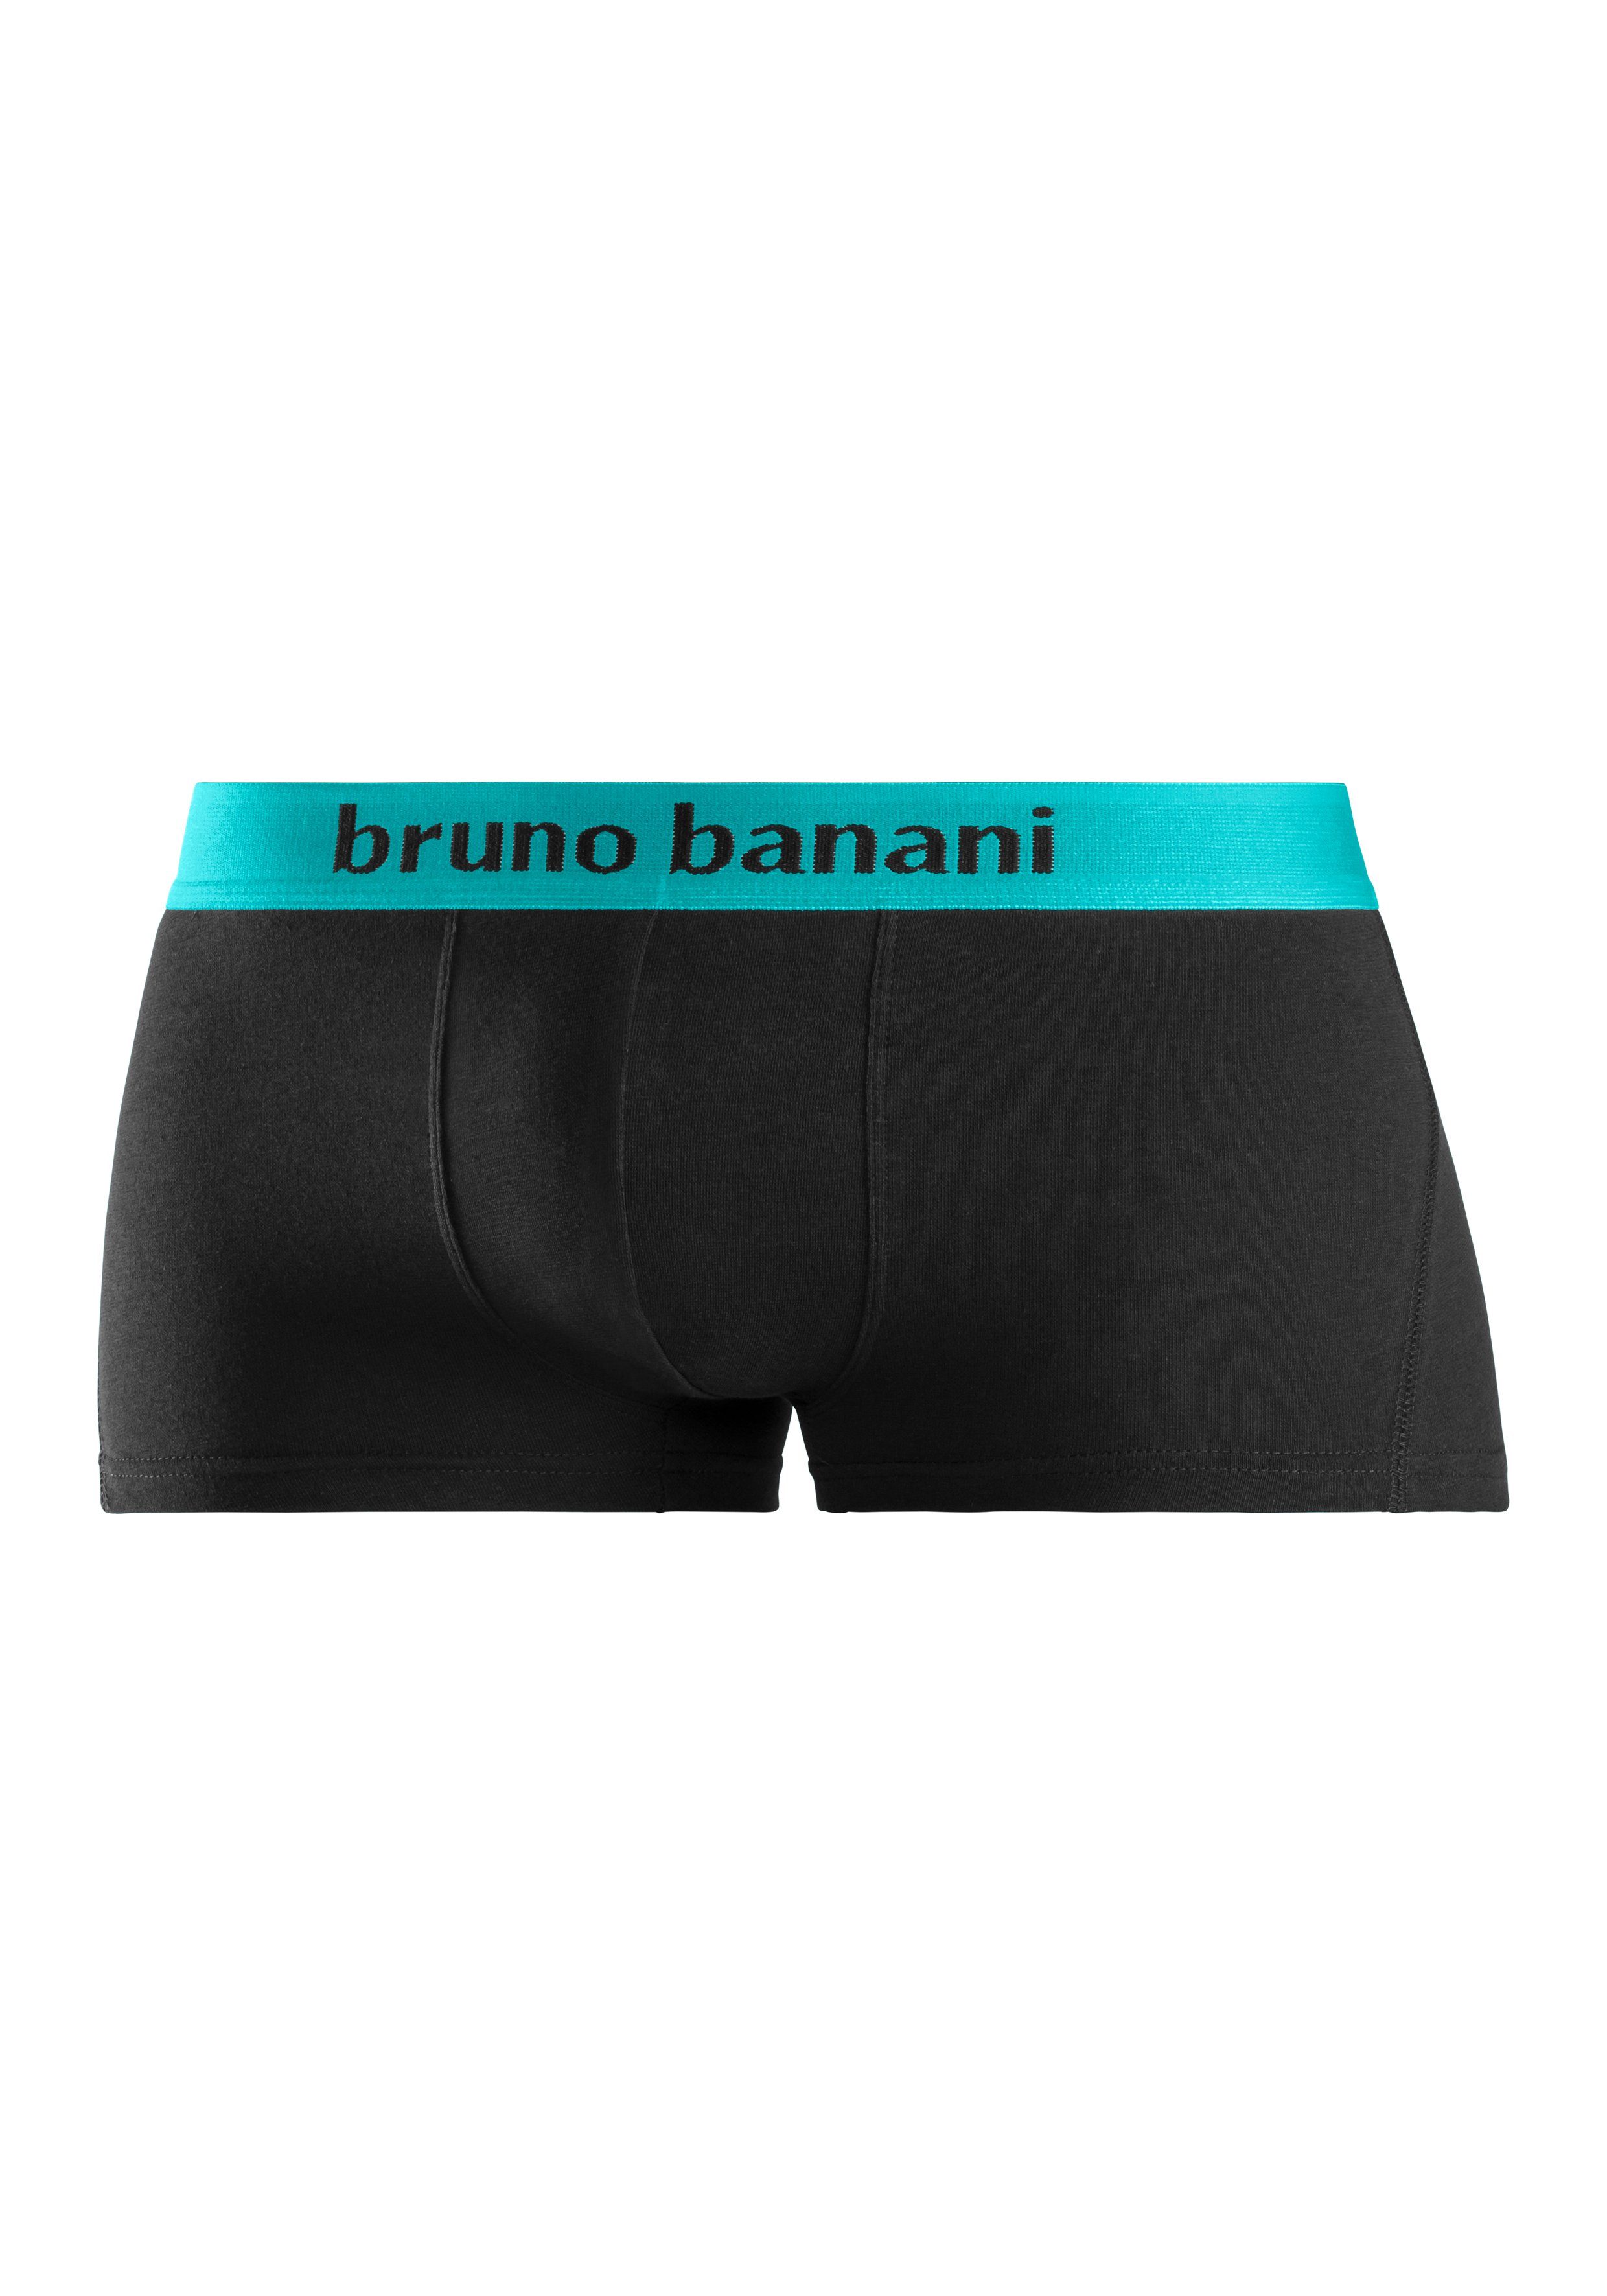 Wäsche/Bademode Unterhosen Bruno Banani Hipster (4 Stück) Mit Logo Webbund